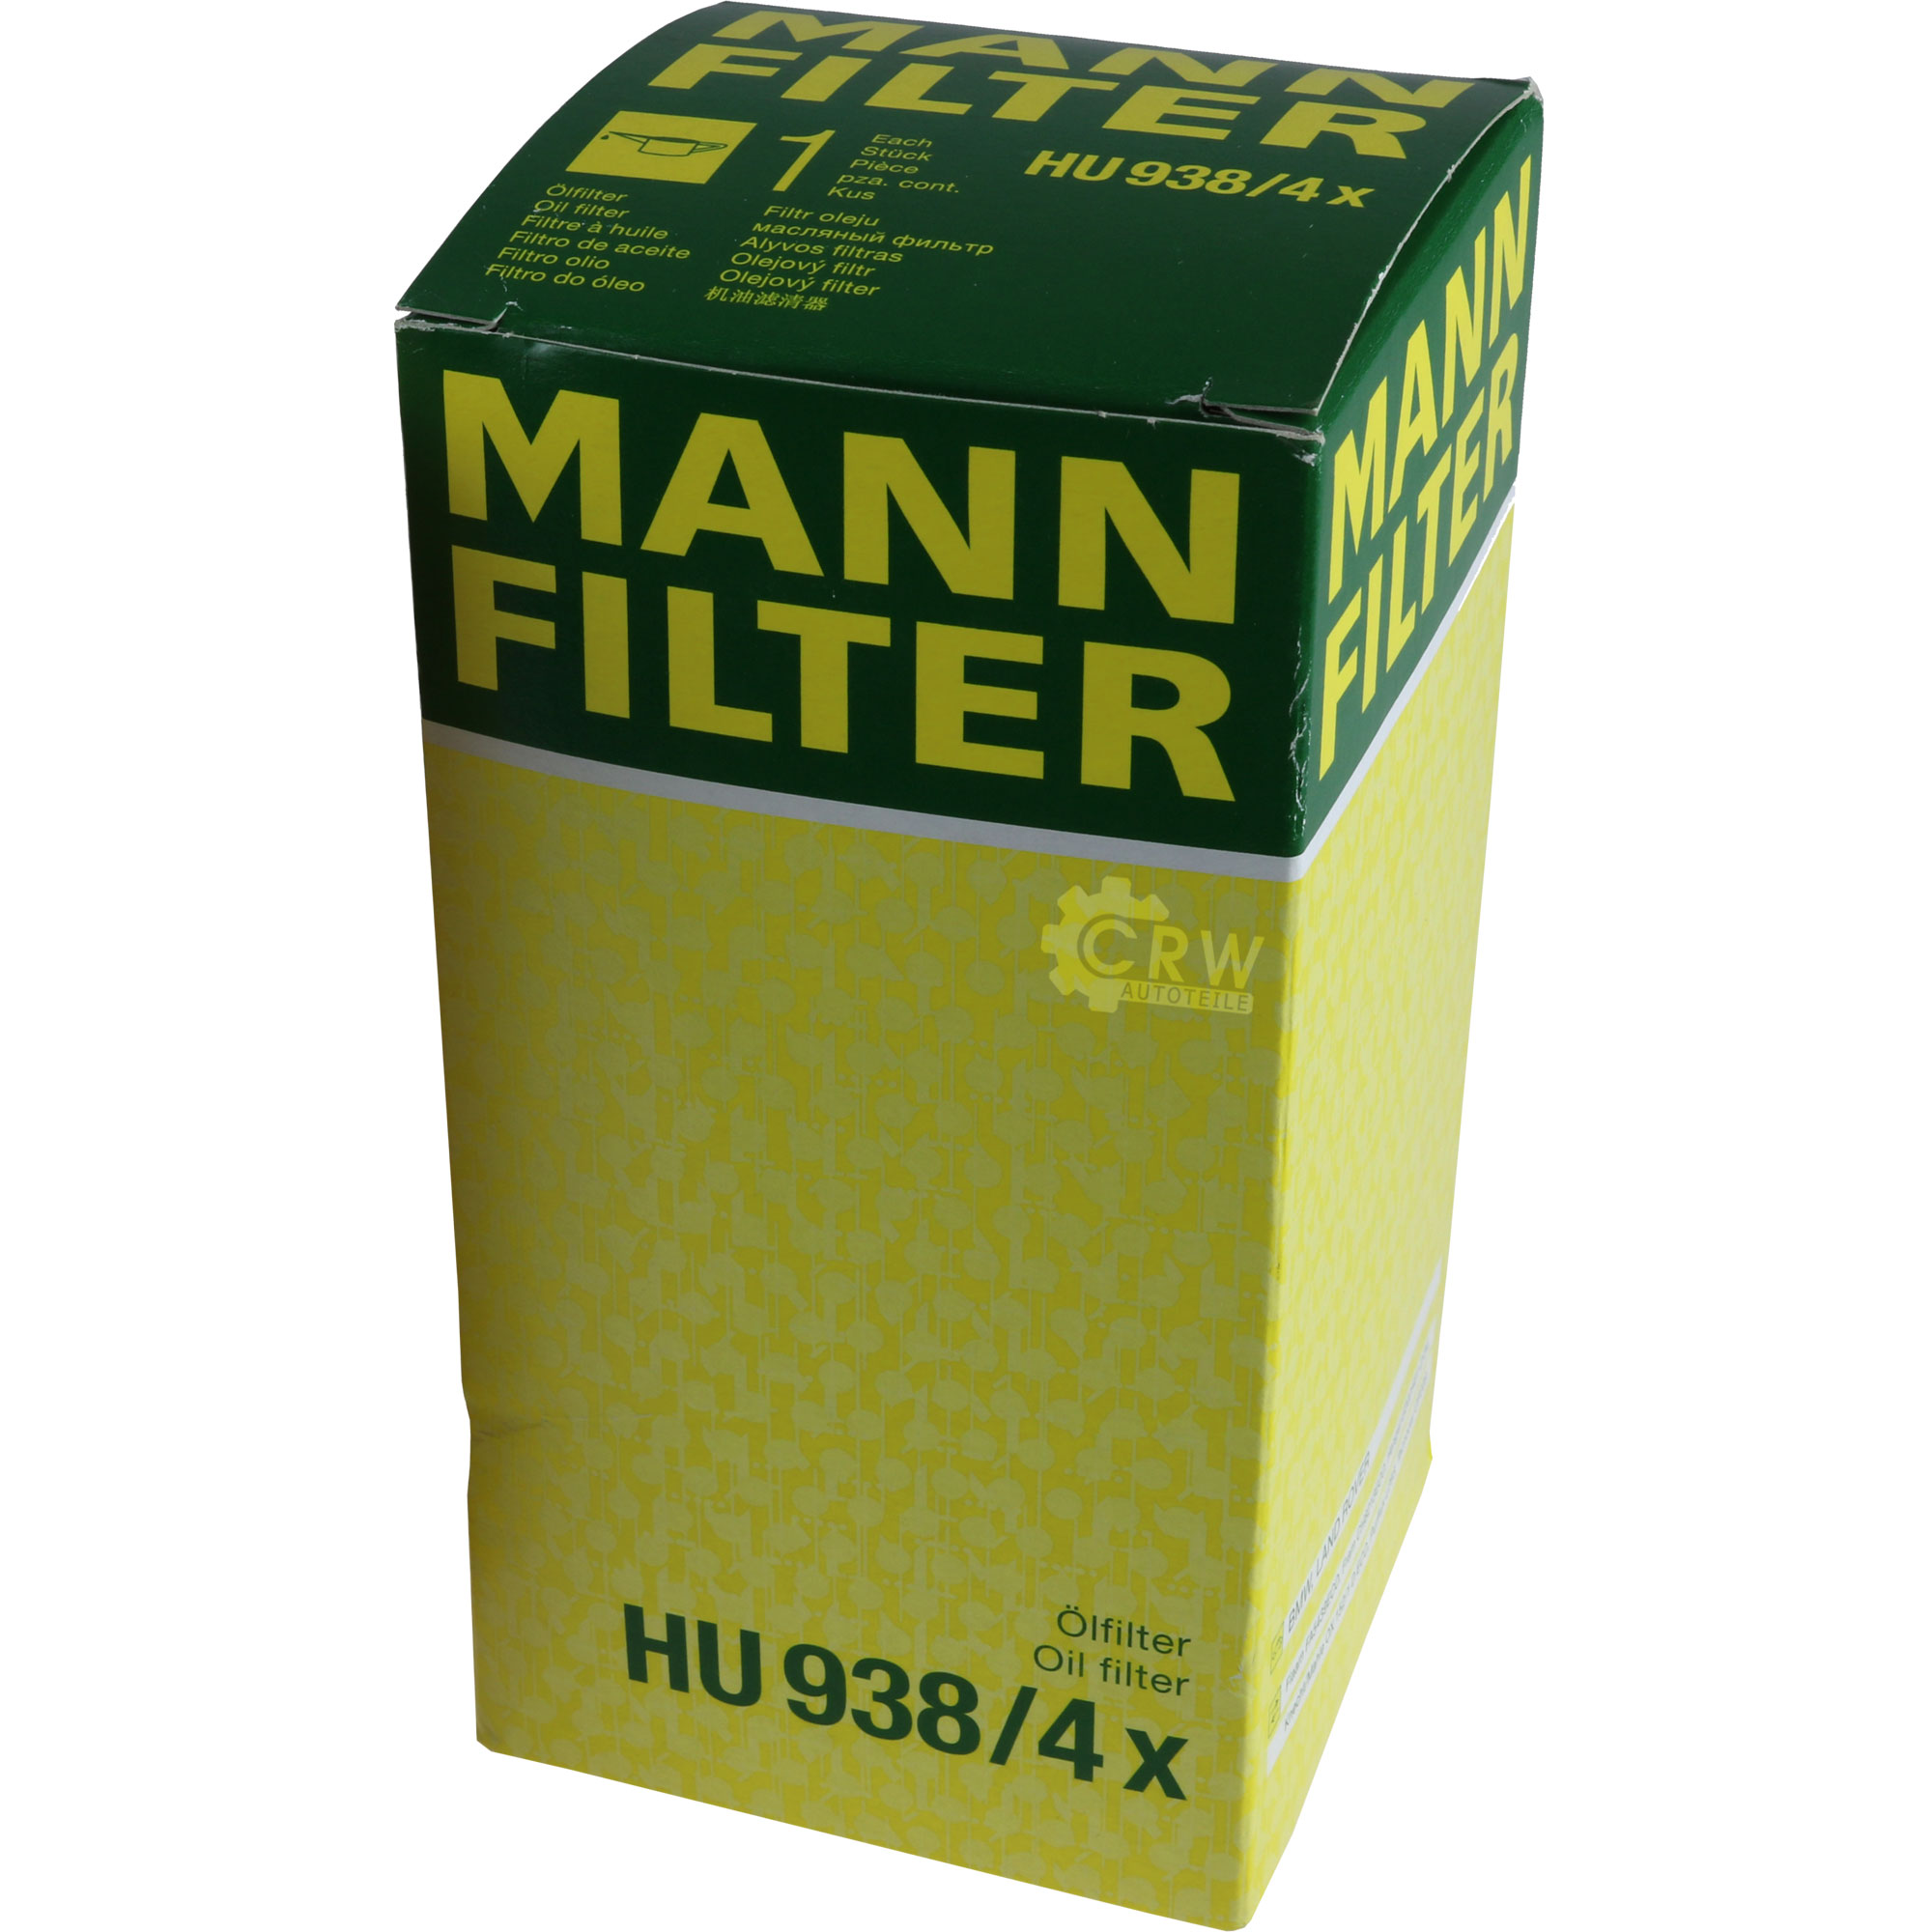 MANN-FILTER Ölfilter HU 938/4 x Oil Filter